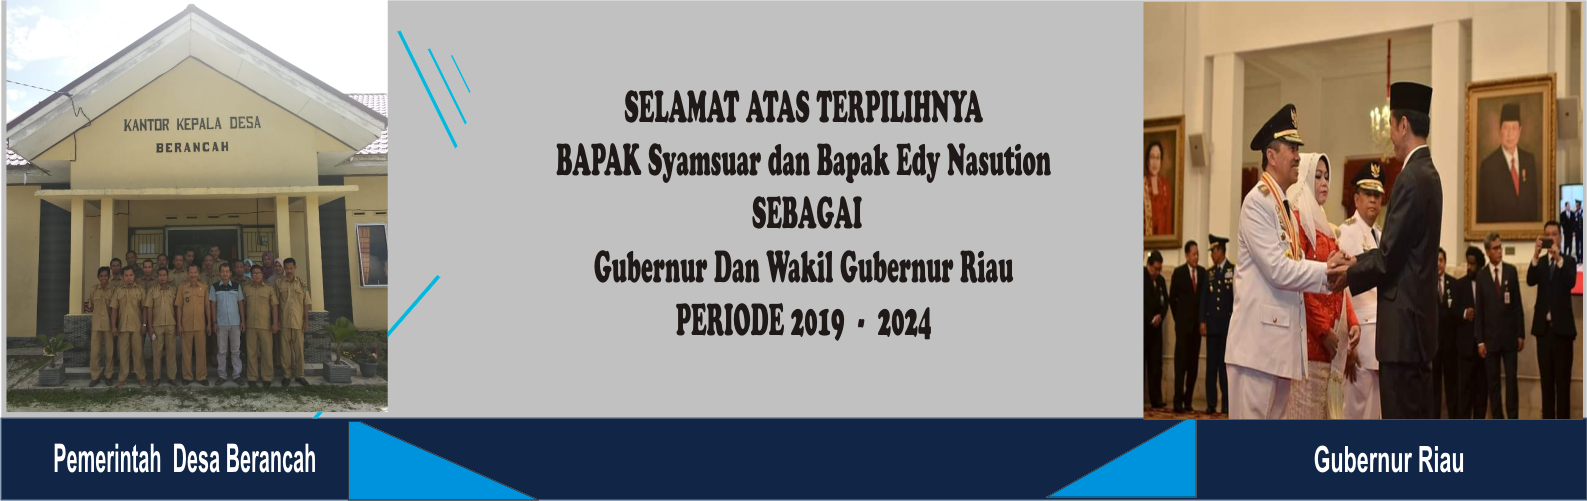 Pemerintah Desa Berancah Mengucapkan Selamat Atas Pelantikan Gubernur Riau 